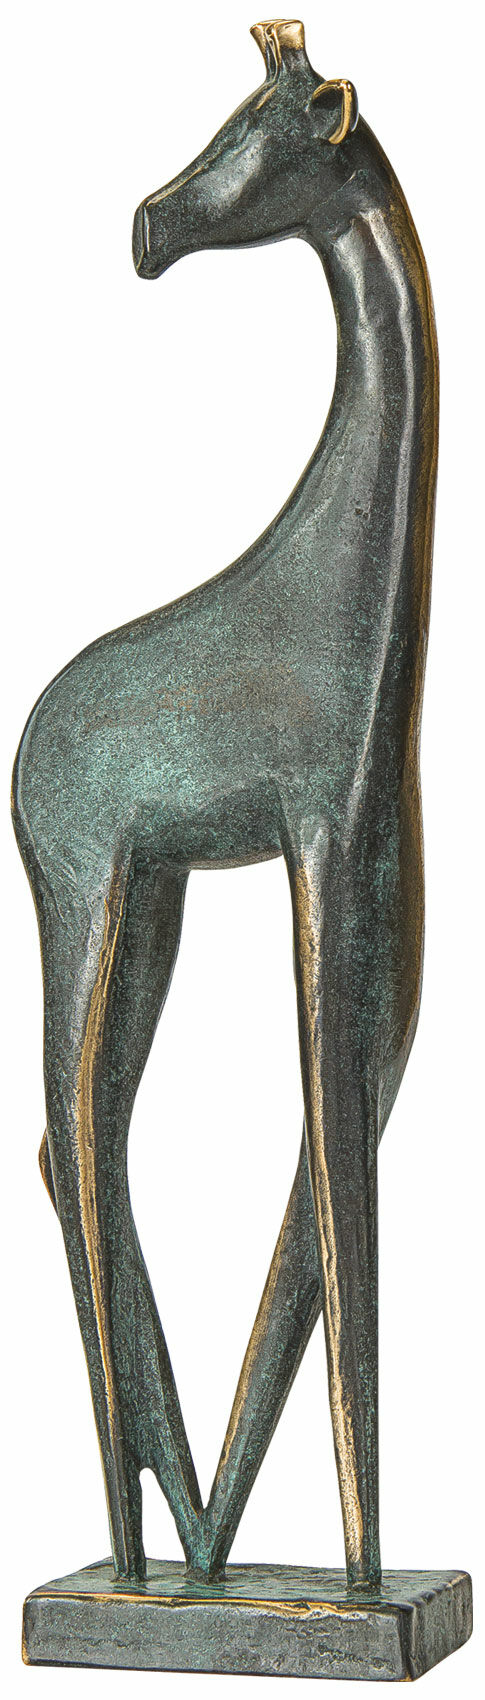 Sculptuur "Giraffe", brons von Raimund Schmelter